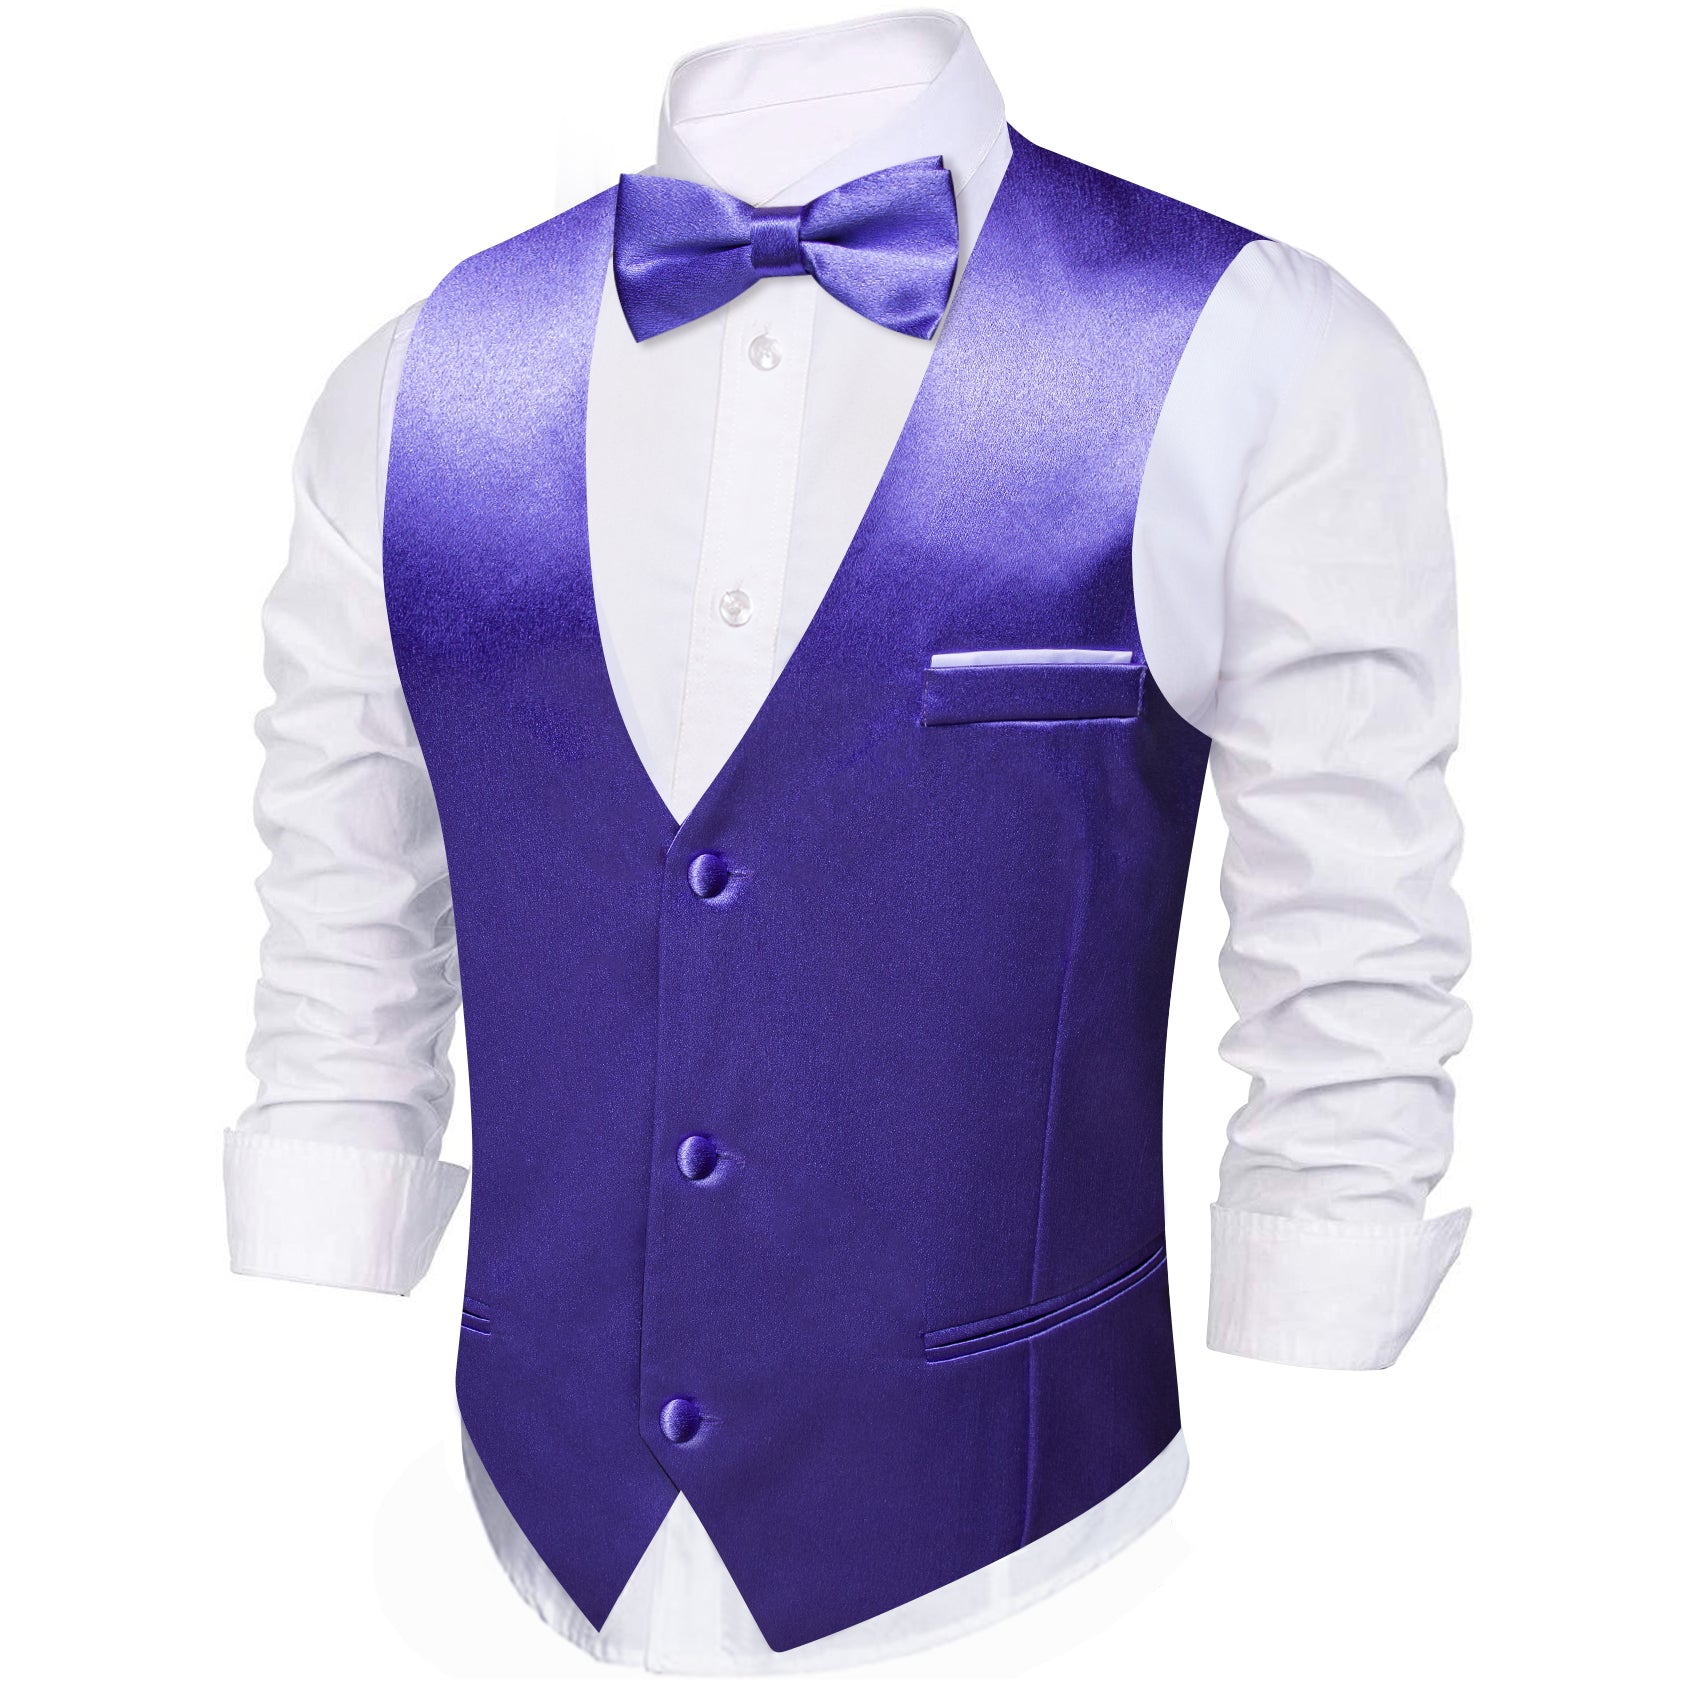 Men's Blue Purple Solid Vest Suit for Business